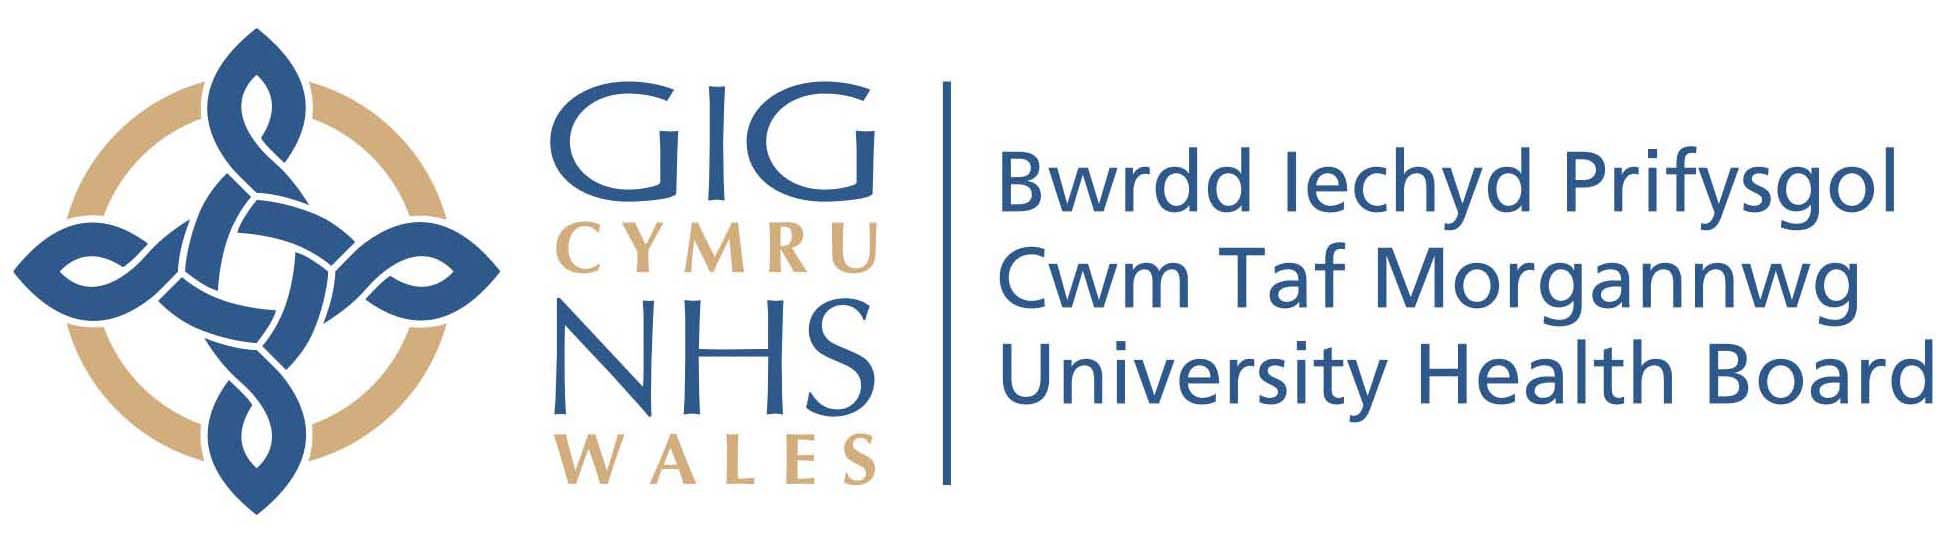 Cwm Taf Morgannwg University Health Board with NHS Wales Logo